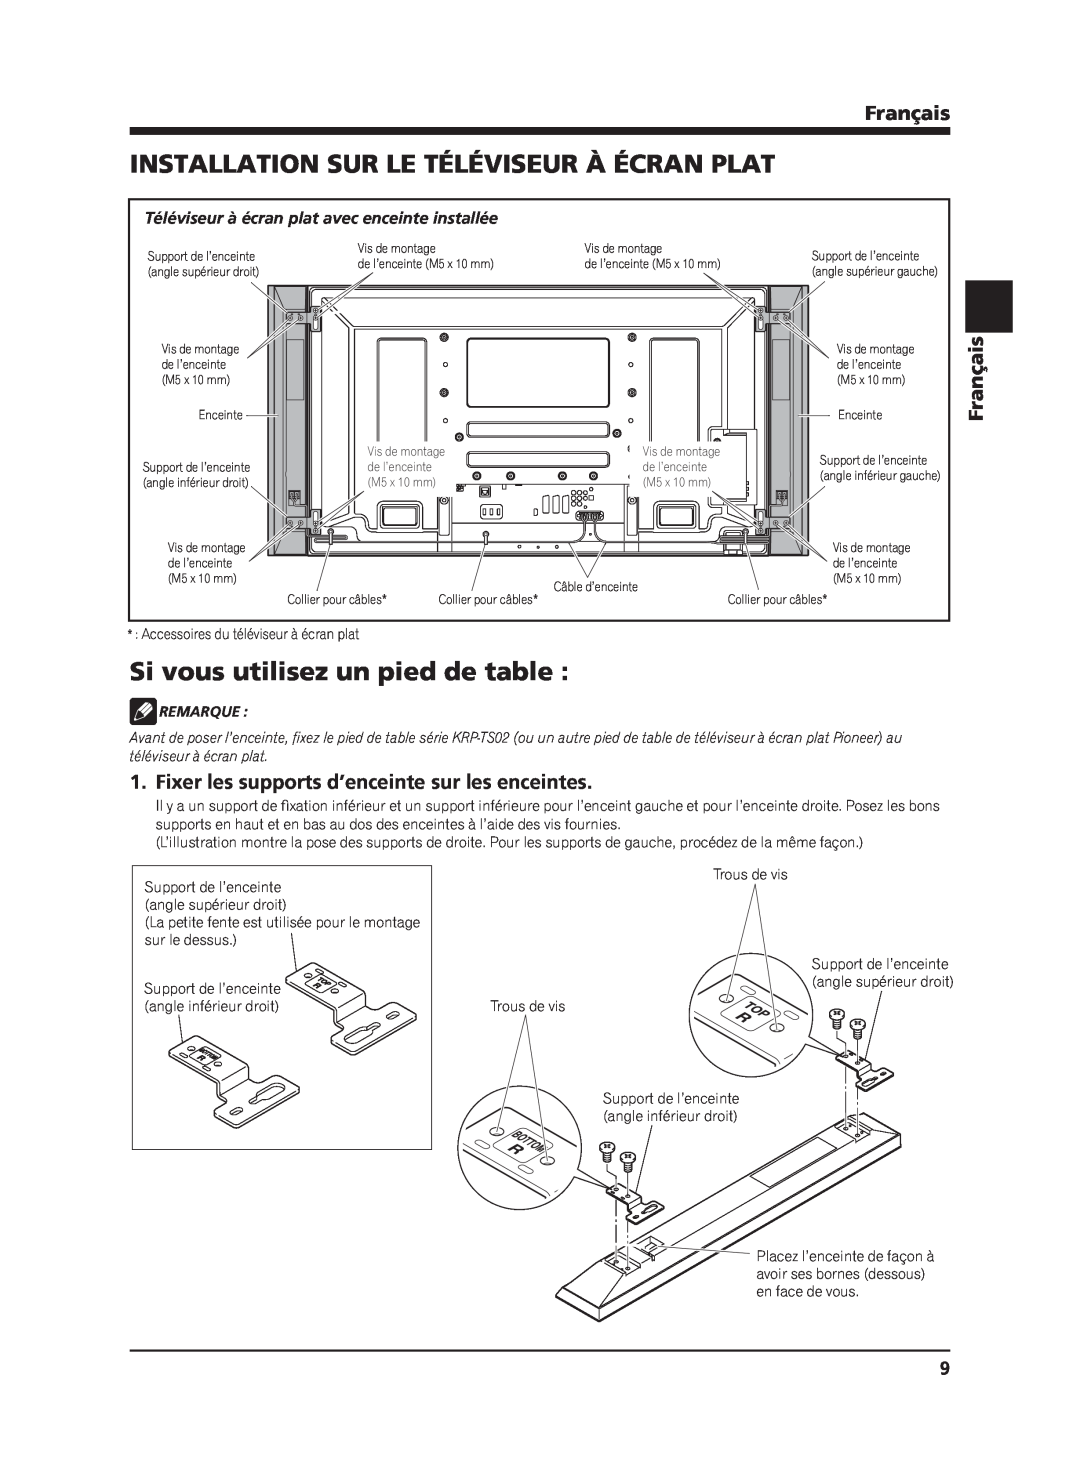 Pioneer PDP-S62 manual Installation Sur Le Téléviseur À Écran Plat, Si vous utilisez un pied de table, Français, Remarque 